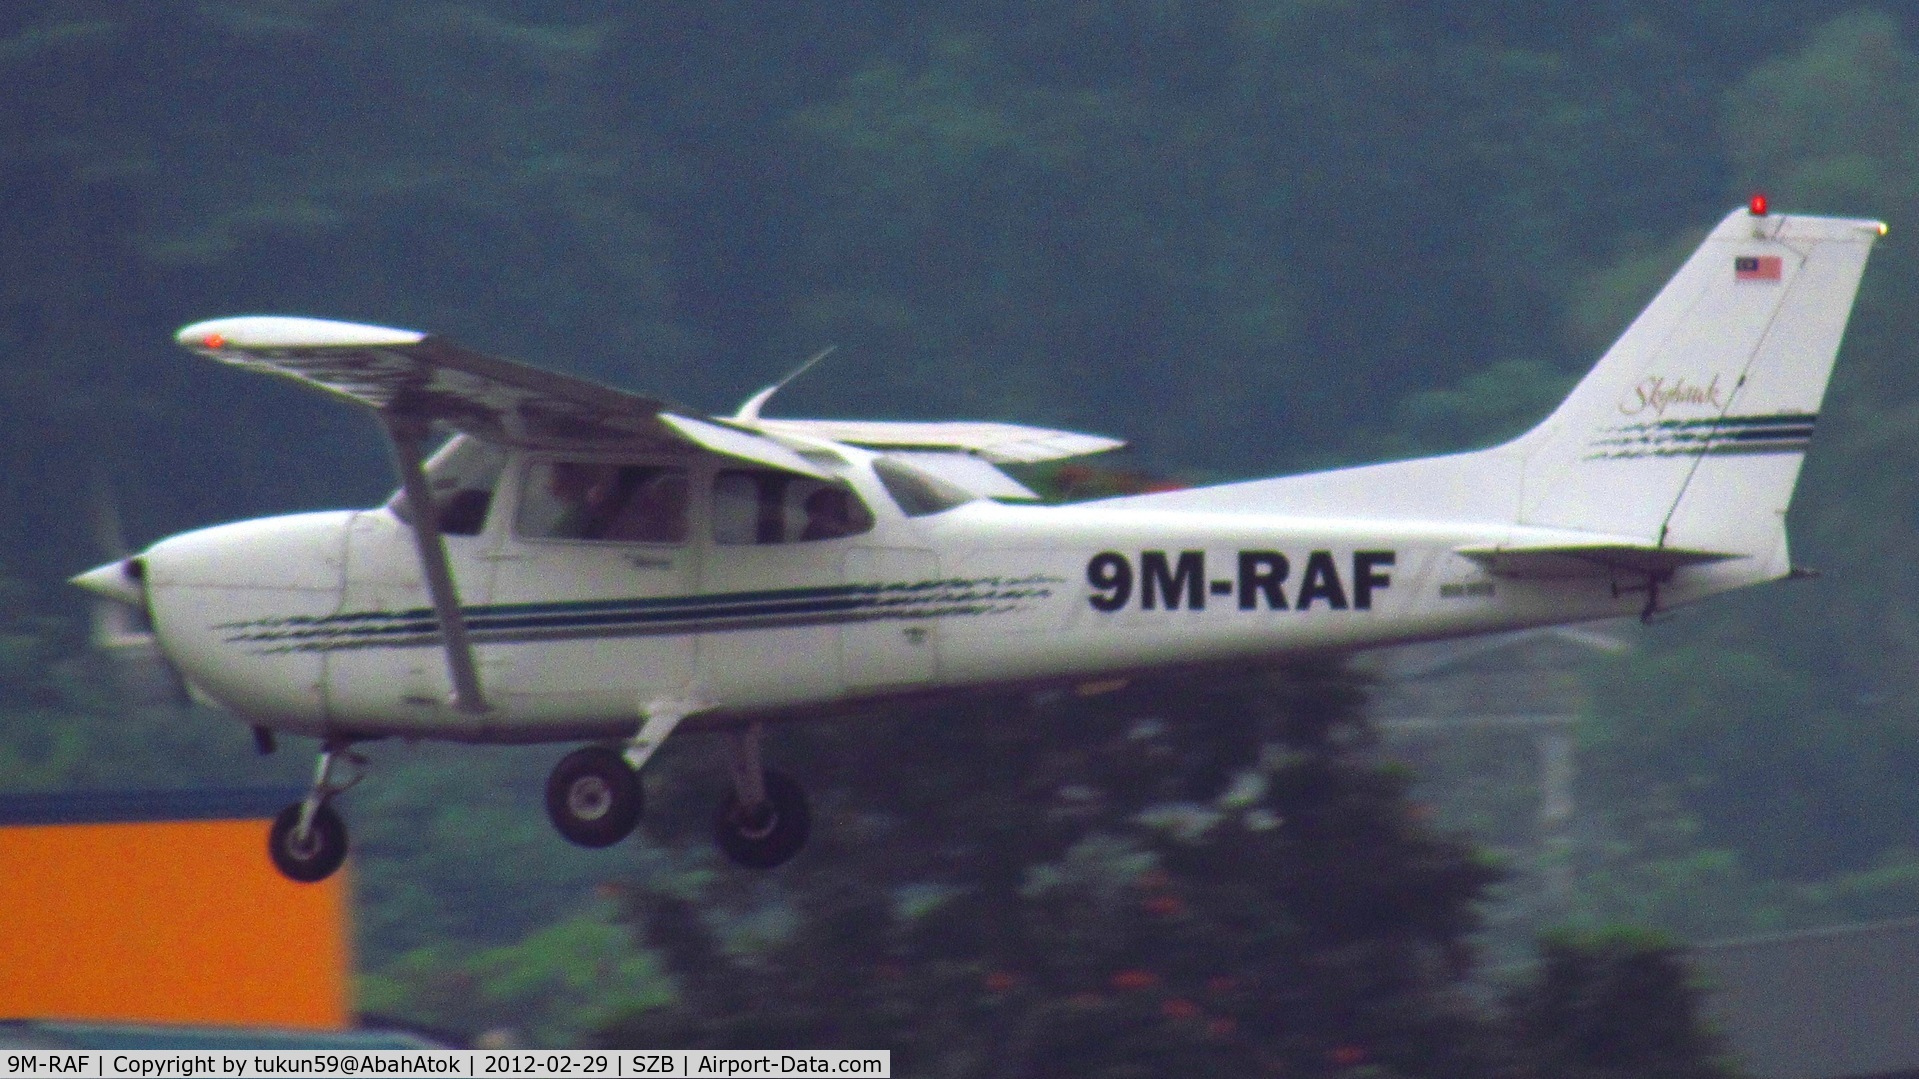 9M-RAF, Cessna 172R C/N Not found 9M-RAF, Private Plane